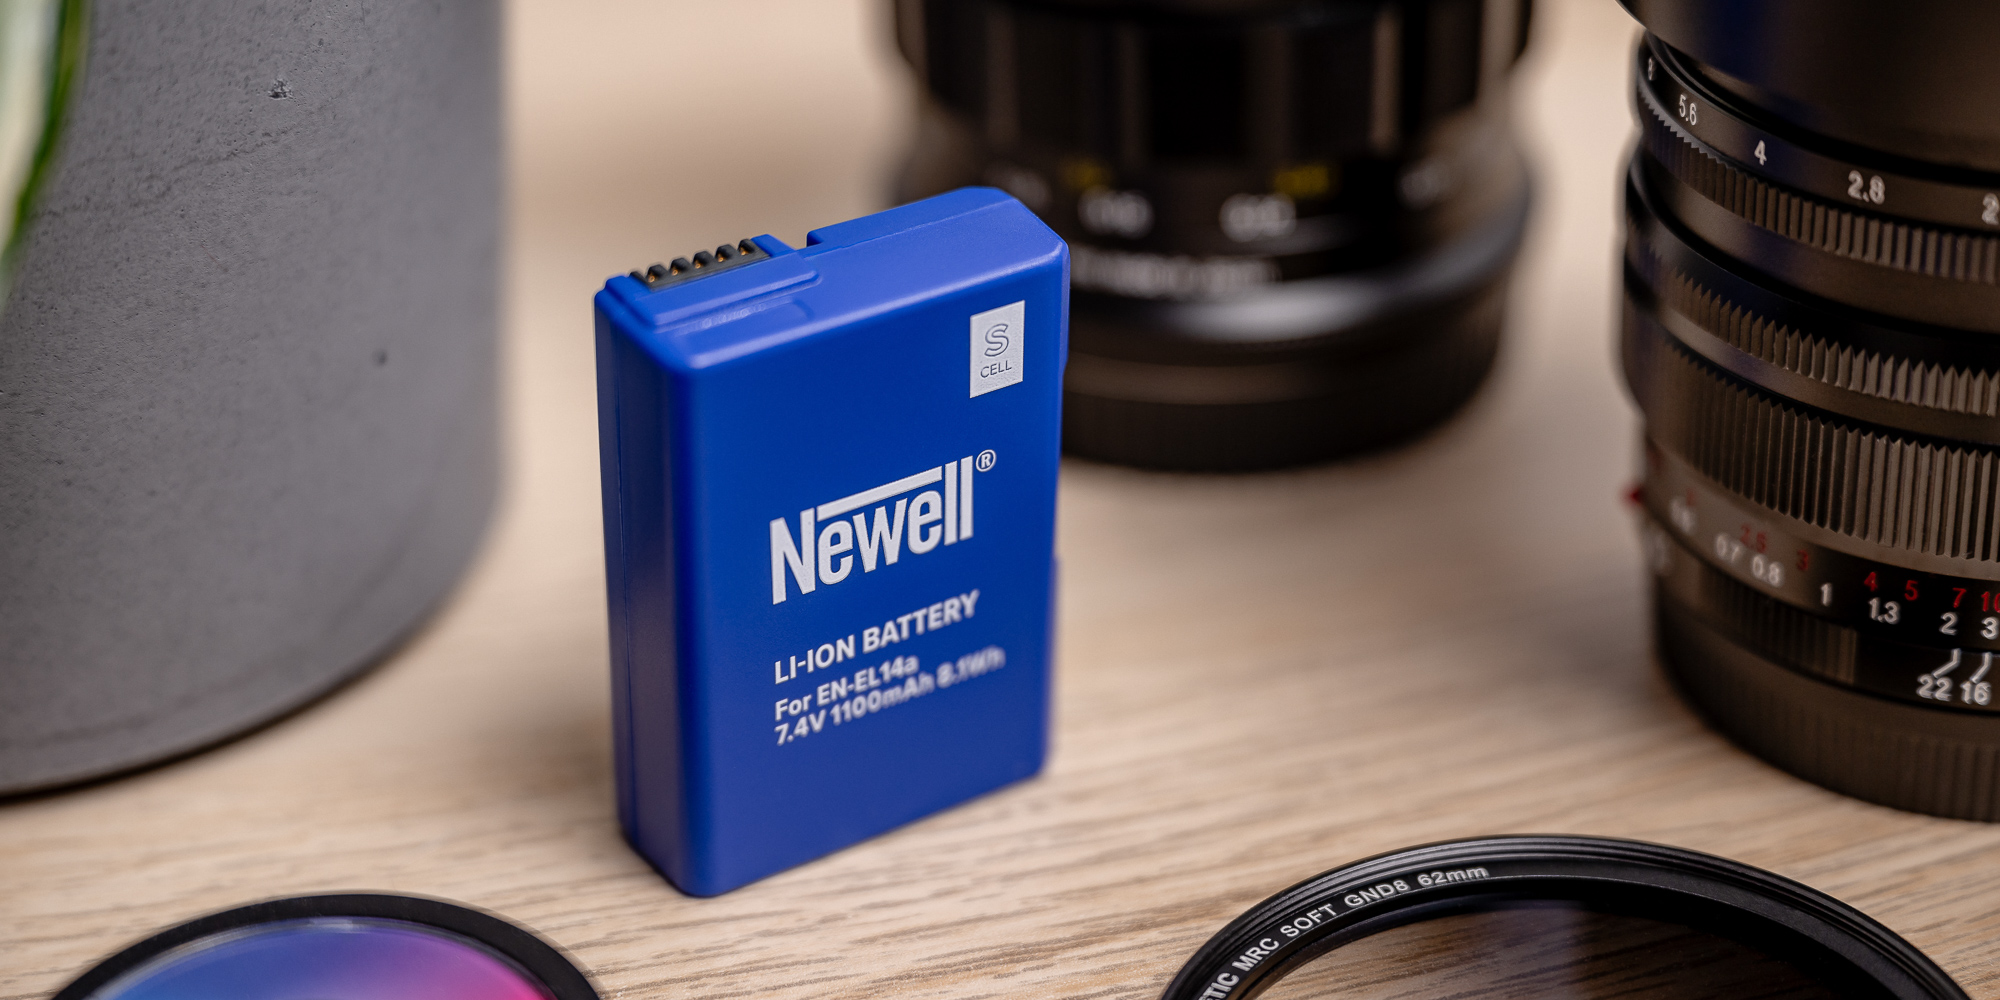 Acumulador Newell SupraCell Protect para EN-EL14a de Nikon